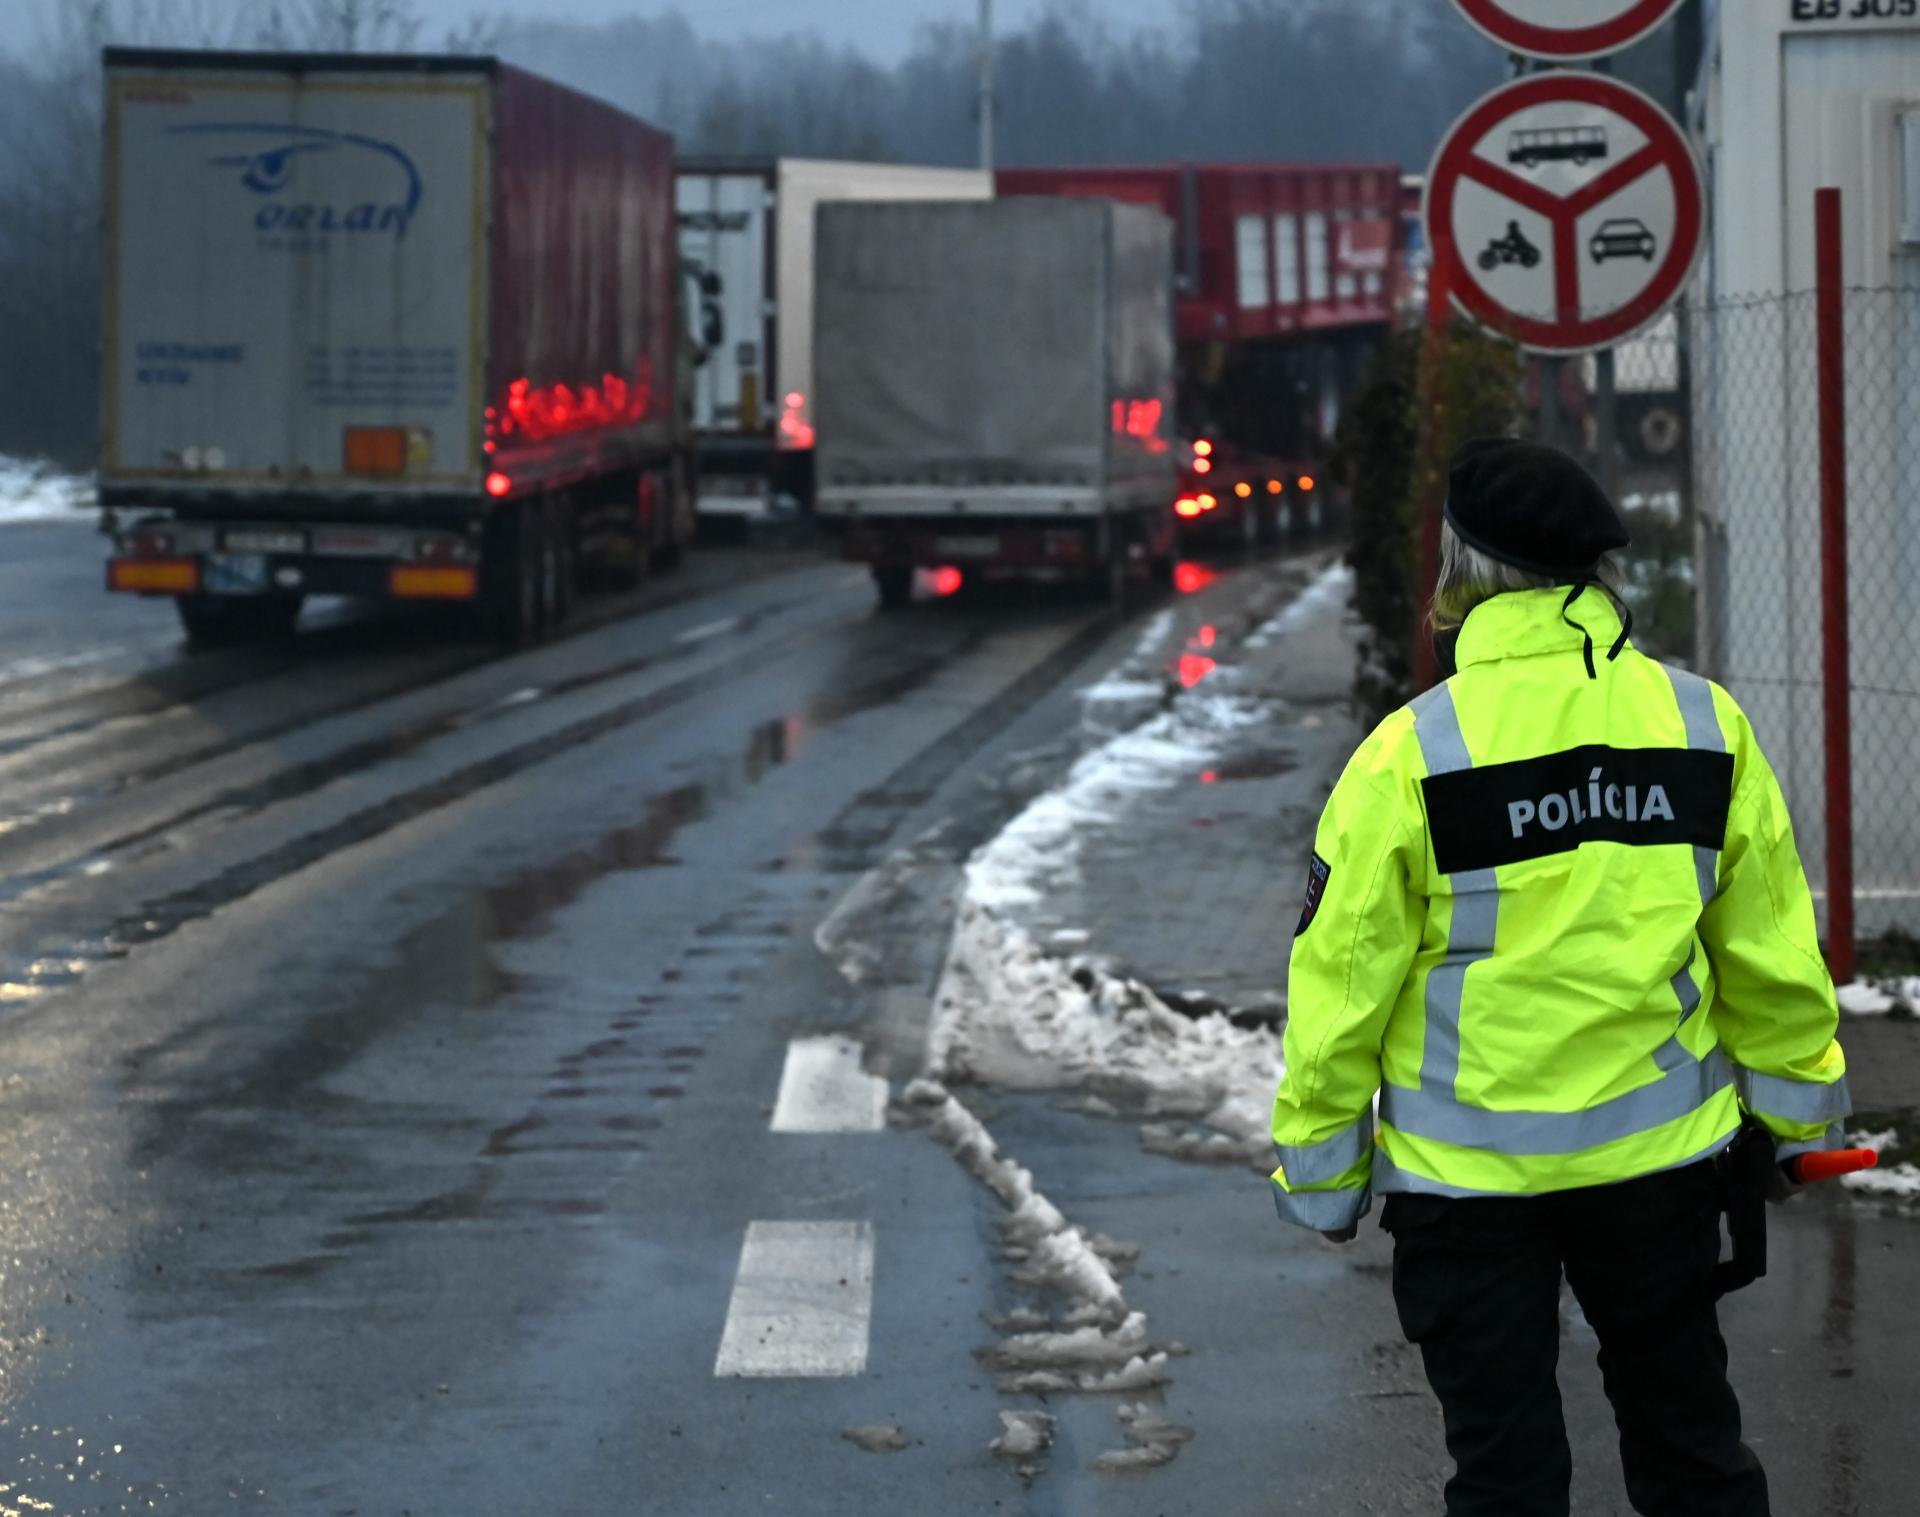 Nemecko predĺži kontroly na hraniciach s Českom, Poľskom a Švajčiarskom. Nahlásilo to eurokomisii